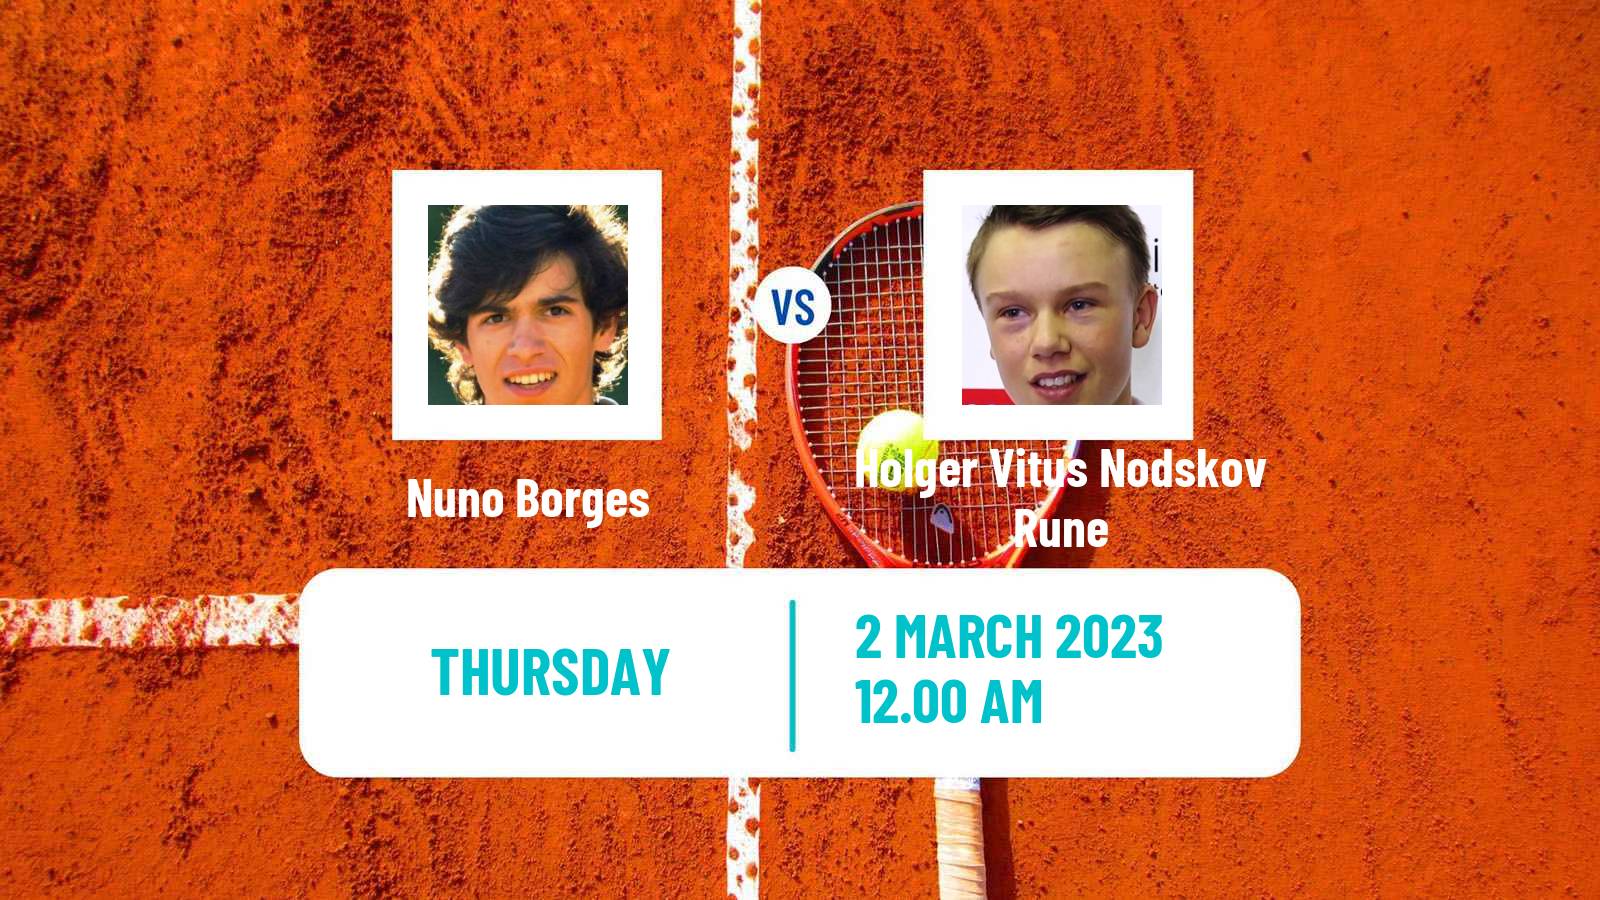 Tennis ATP Acapulco Nuno Borges - Holger Vitus Nodskov Rune